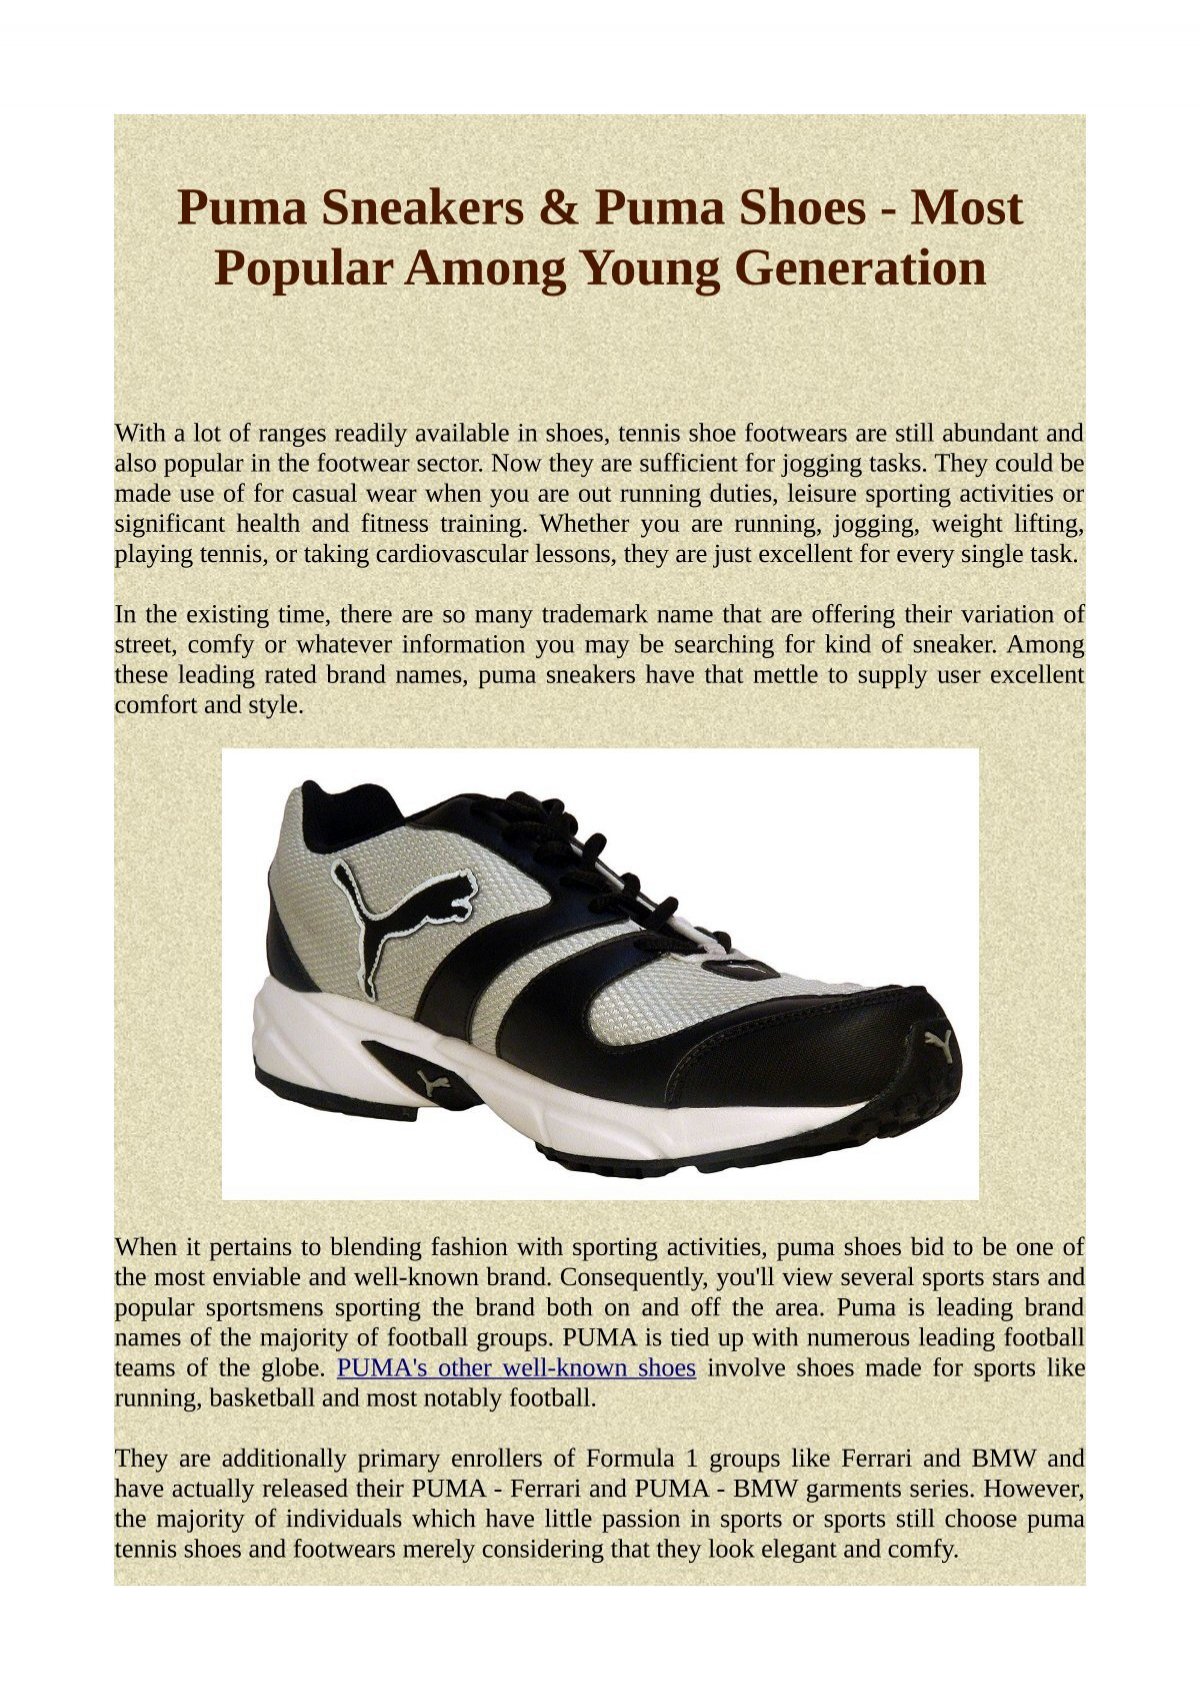 puma most popular shoes